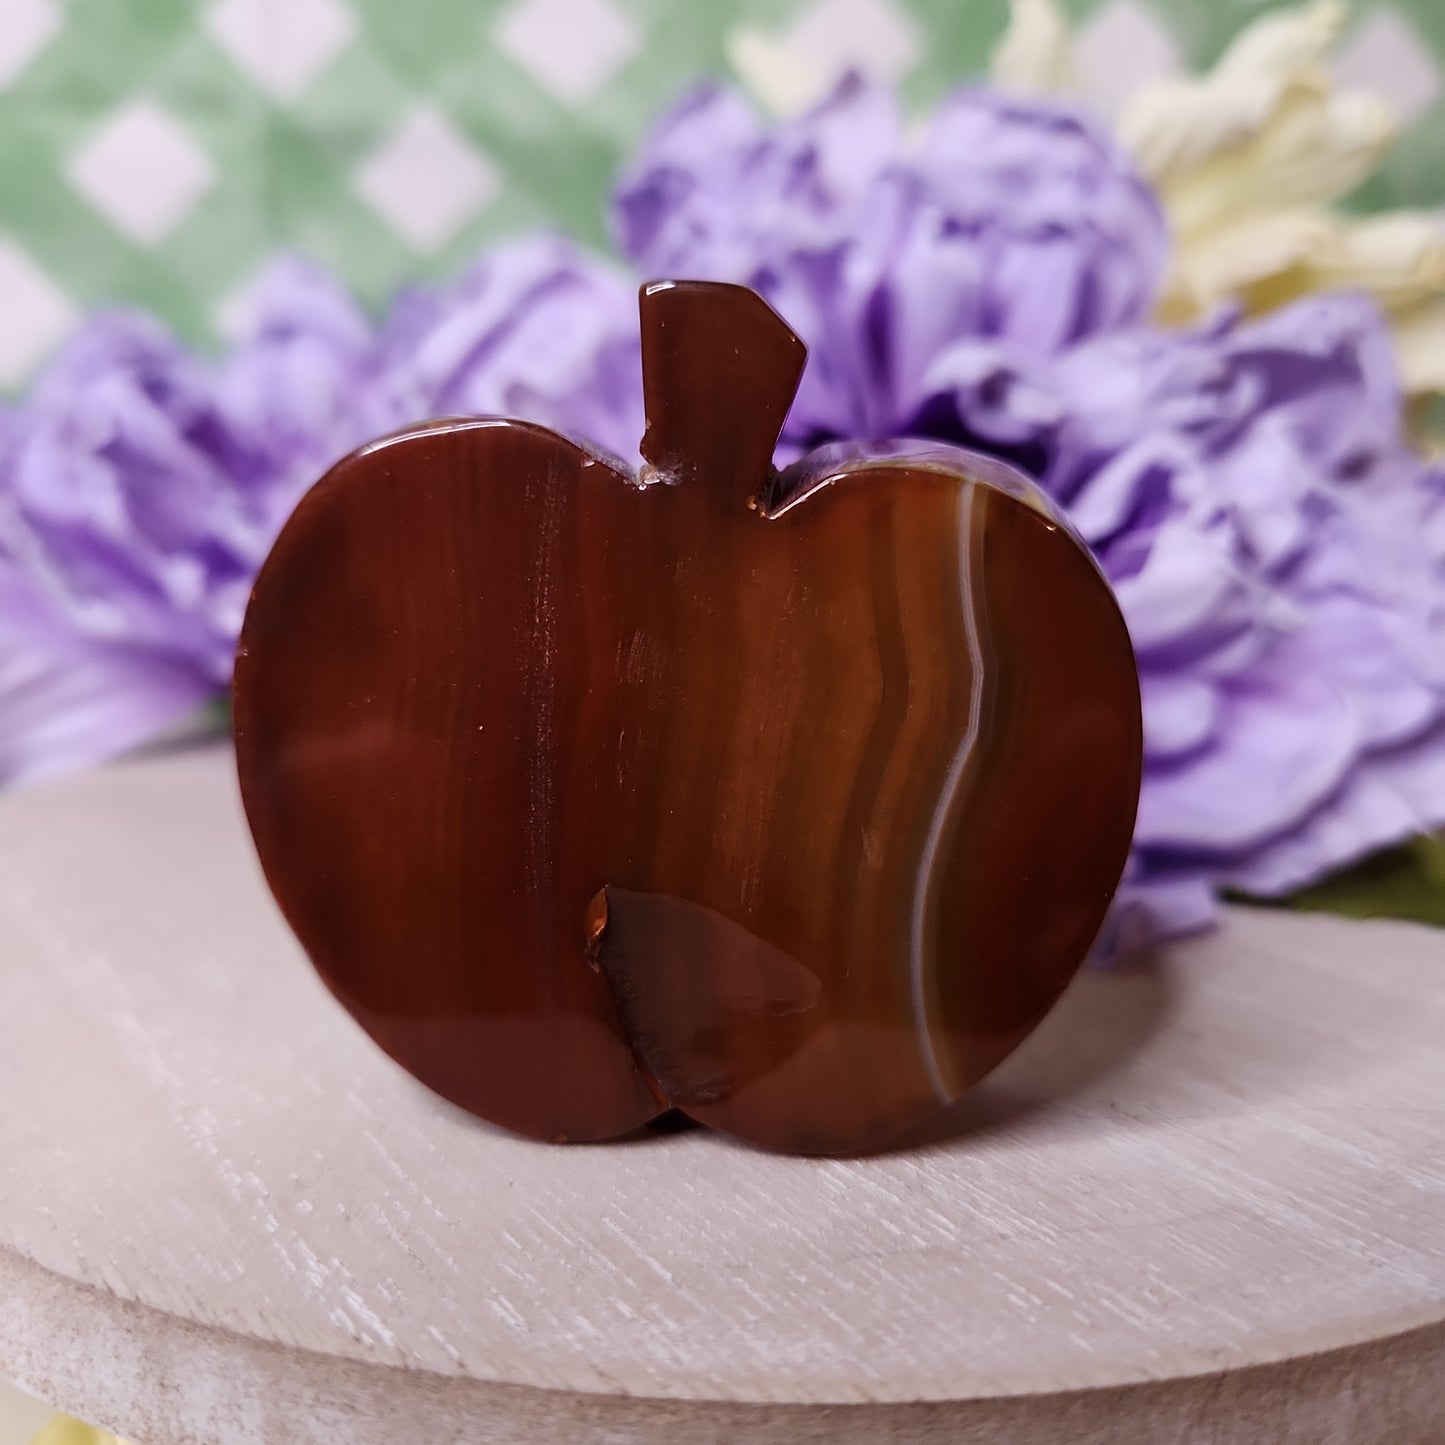 Carnelian apple carving